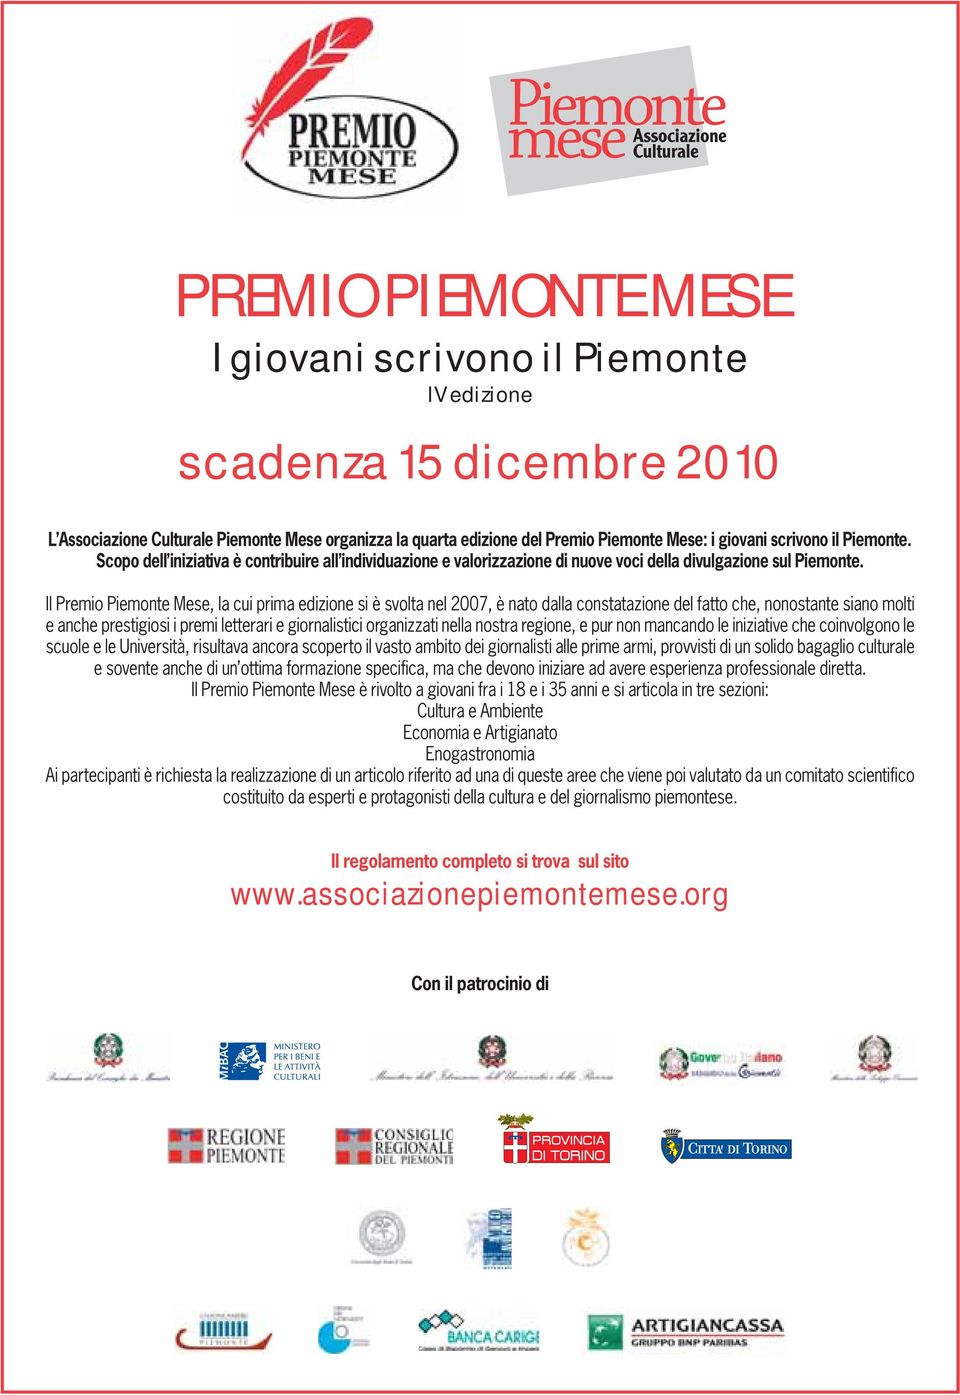 Il Premio Piemonte Mese, la cui prima edizione si è svolta nel 2007, è nato dalla constatazione del fatto che, nonostante siano molti e anche prestigiosi i premi letterari e giornalistici organizzati